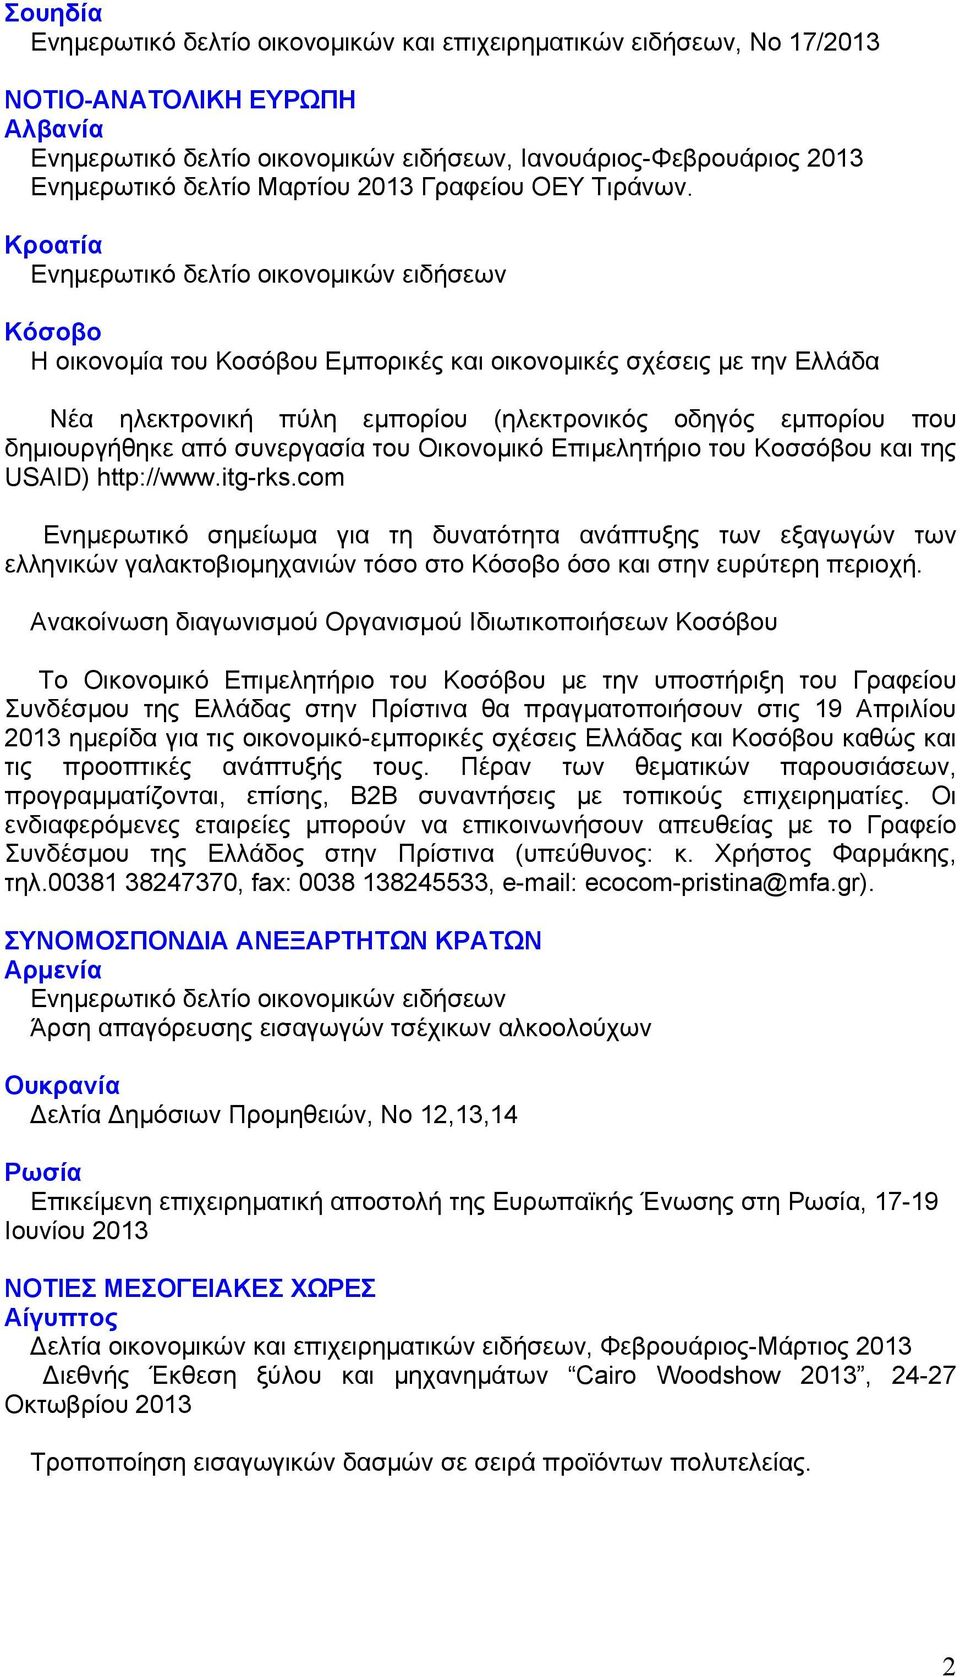 Κροατία Ενημερωτικό δελτίο οικονομικών ειδήσεων Κόσοβο Η οικονομία του Κοσόβου Εμπορικές και οικονομικές σχέσεις με την Ελλάδα Νέα ηλεκτρονική πύλη εμπορίου (ηλεκτρονικός οδηγός εμπορίου που